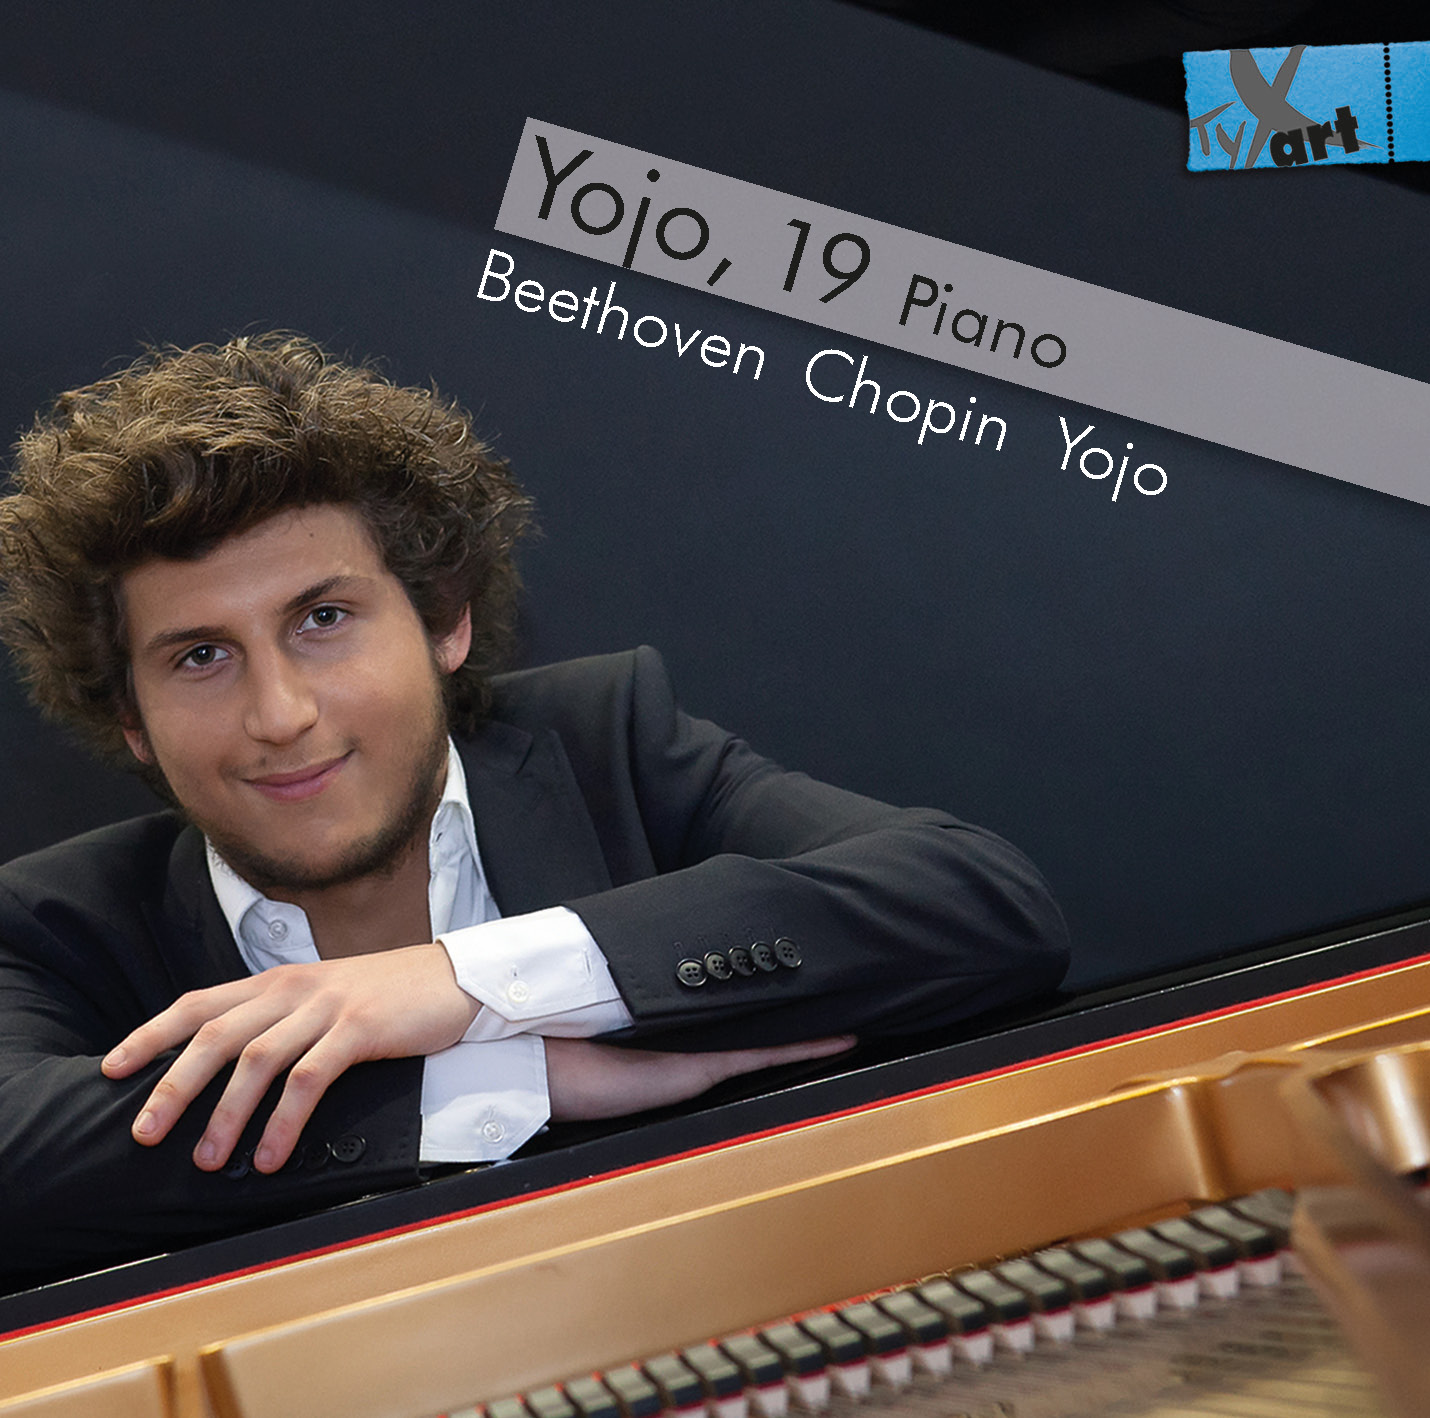 Yojo, 19, Piano - CD 2016